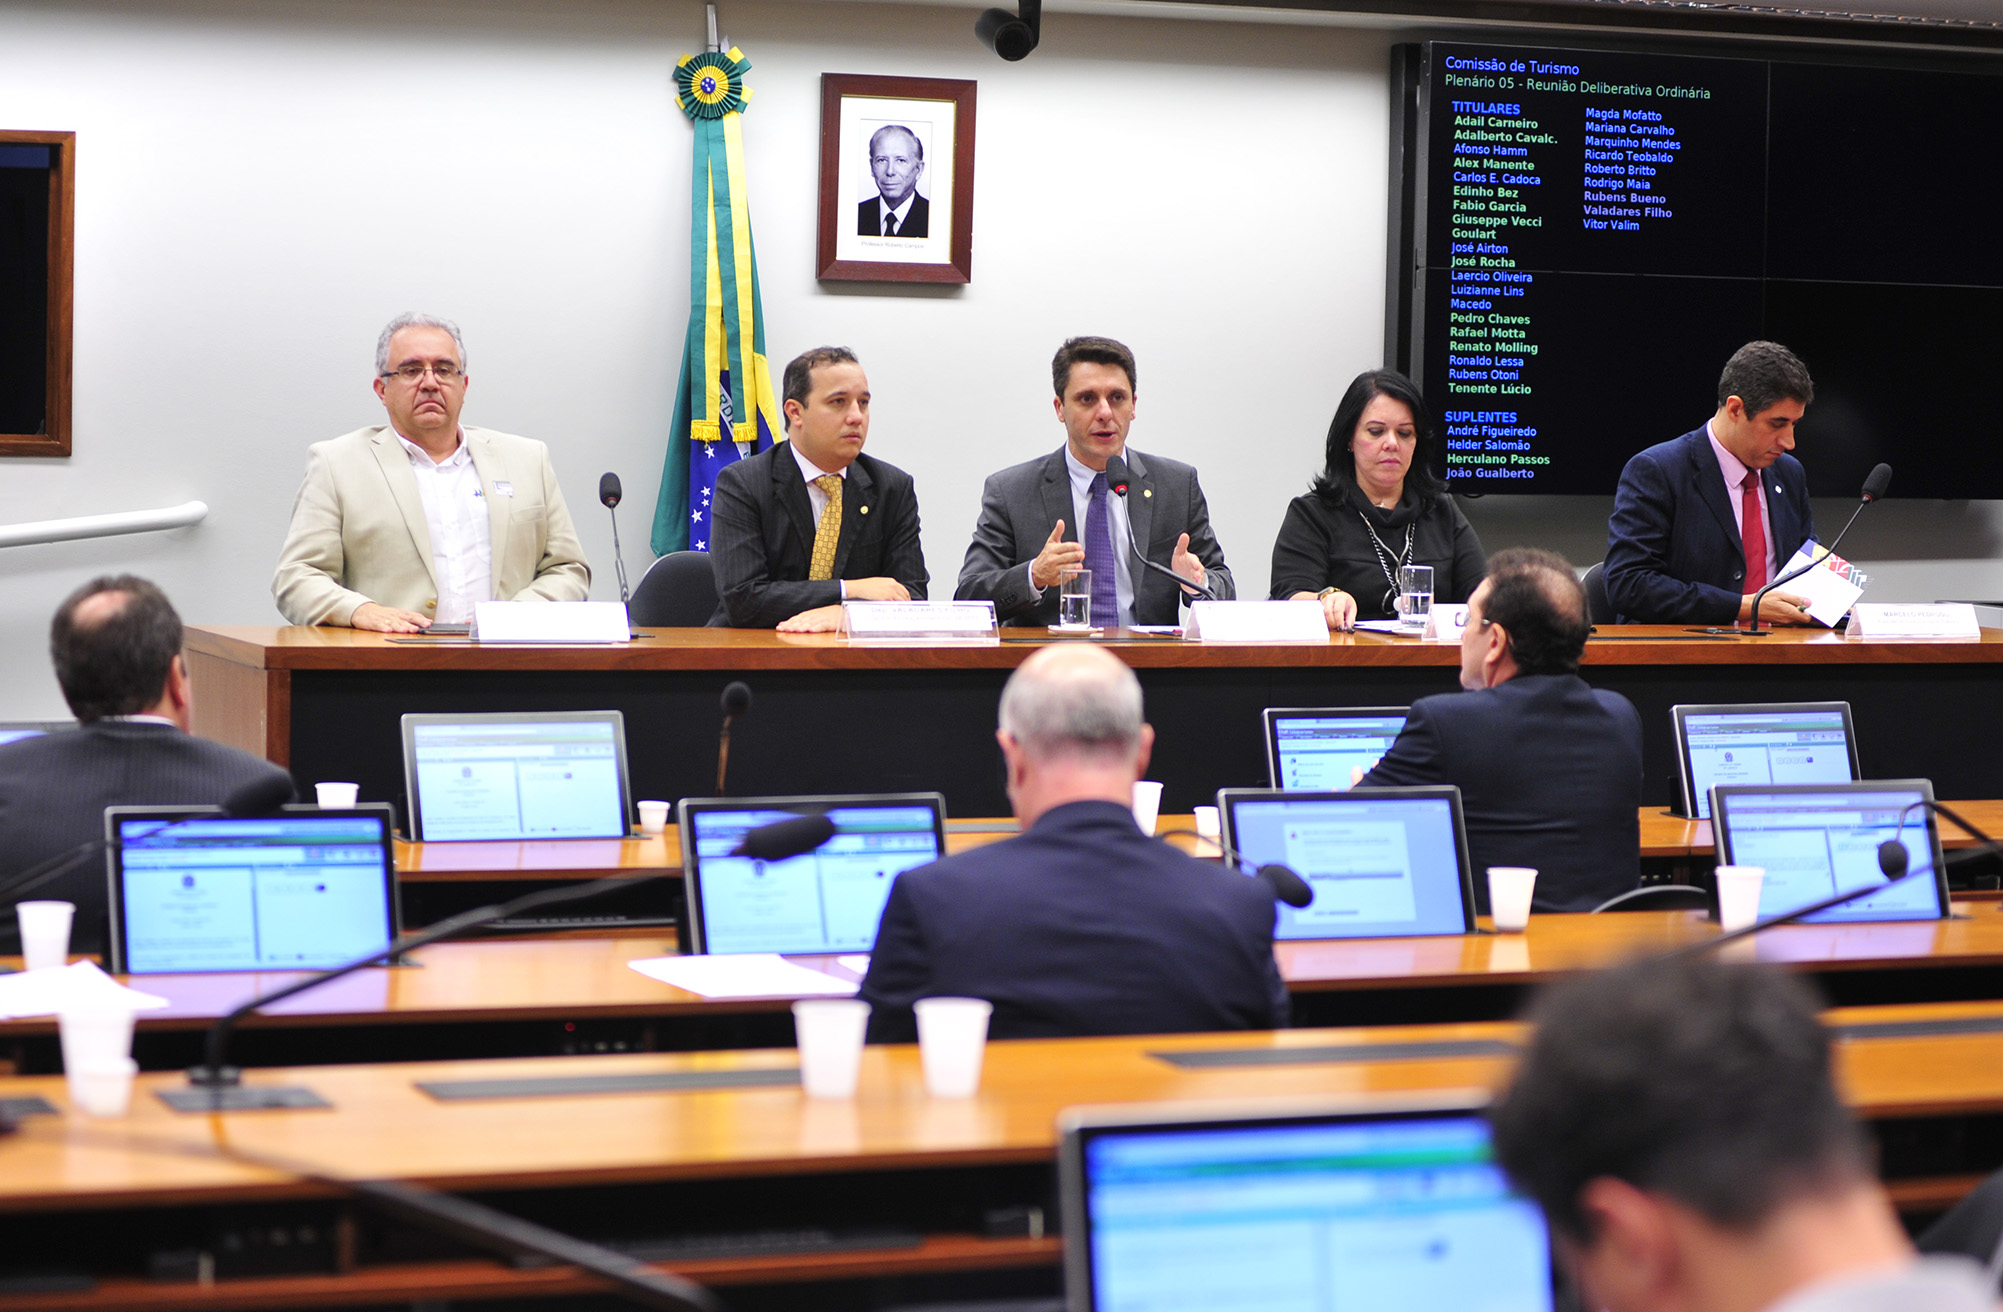 Audiência Pública para debater a despoluição da Baía de Guanabara e da Lagoa Rodrigo de Freitas